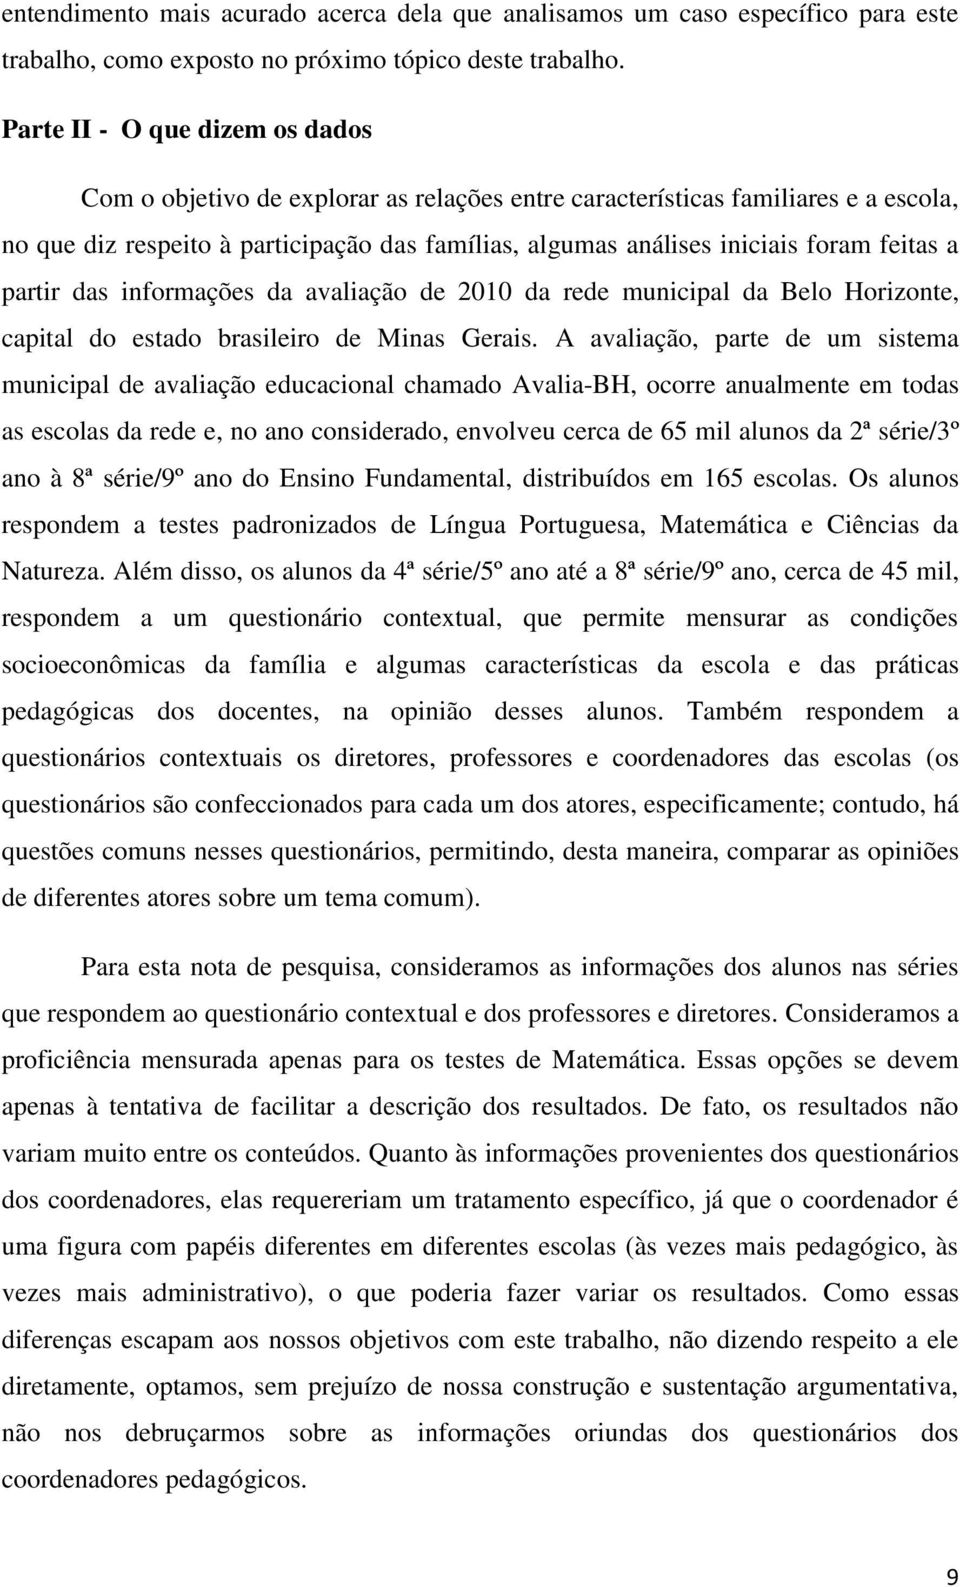 feitas a partir das informações da avaliação de 2010 da rede municipal da Belo Horizonte, capital do estado brasileiro de Minas Gerais.